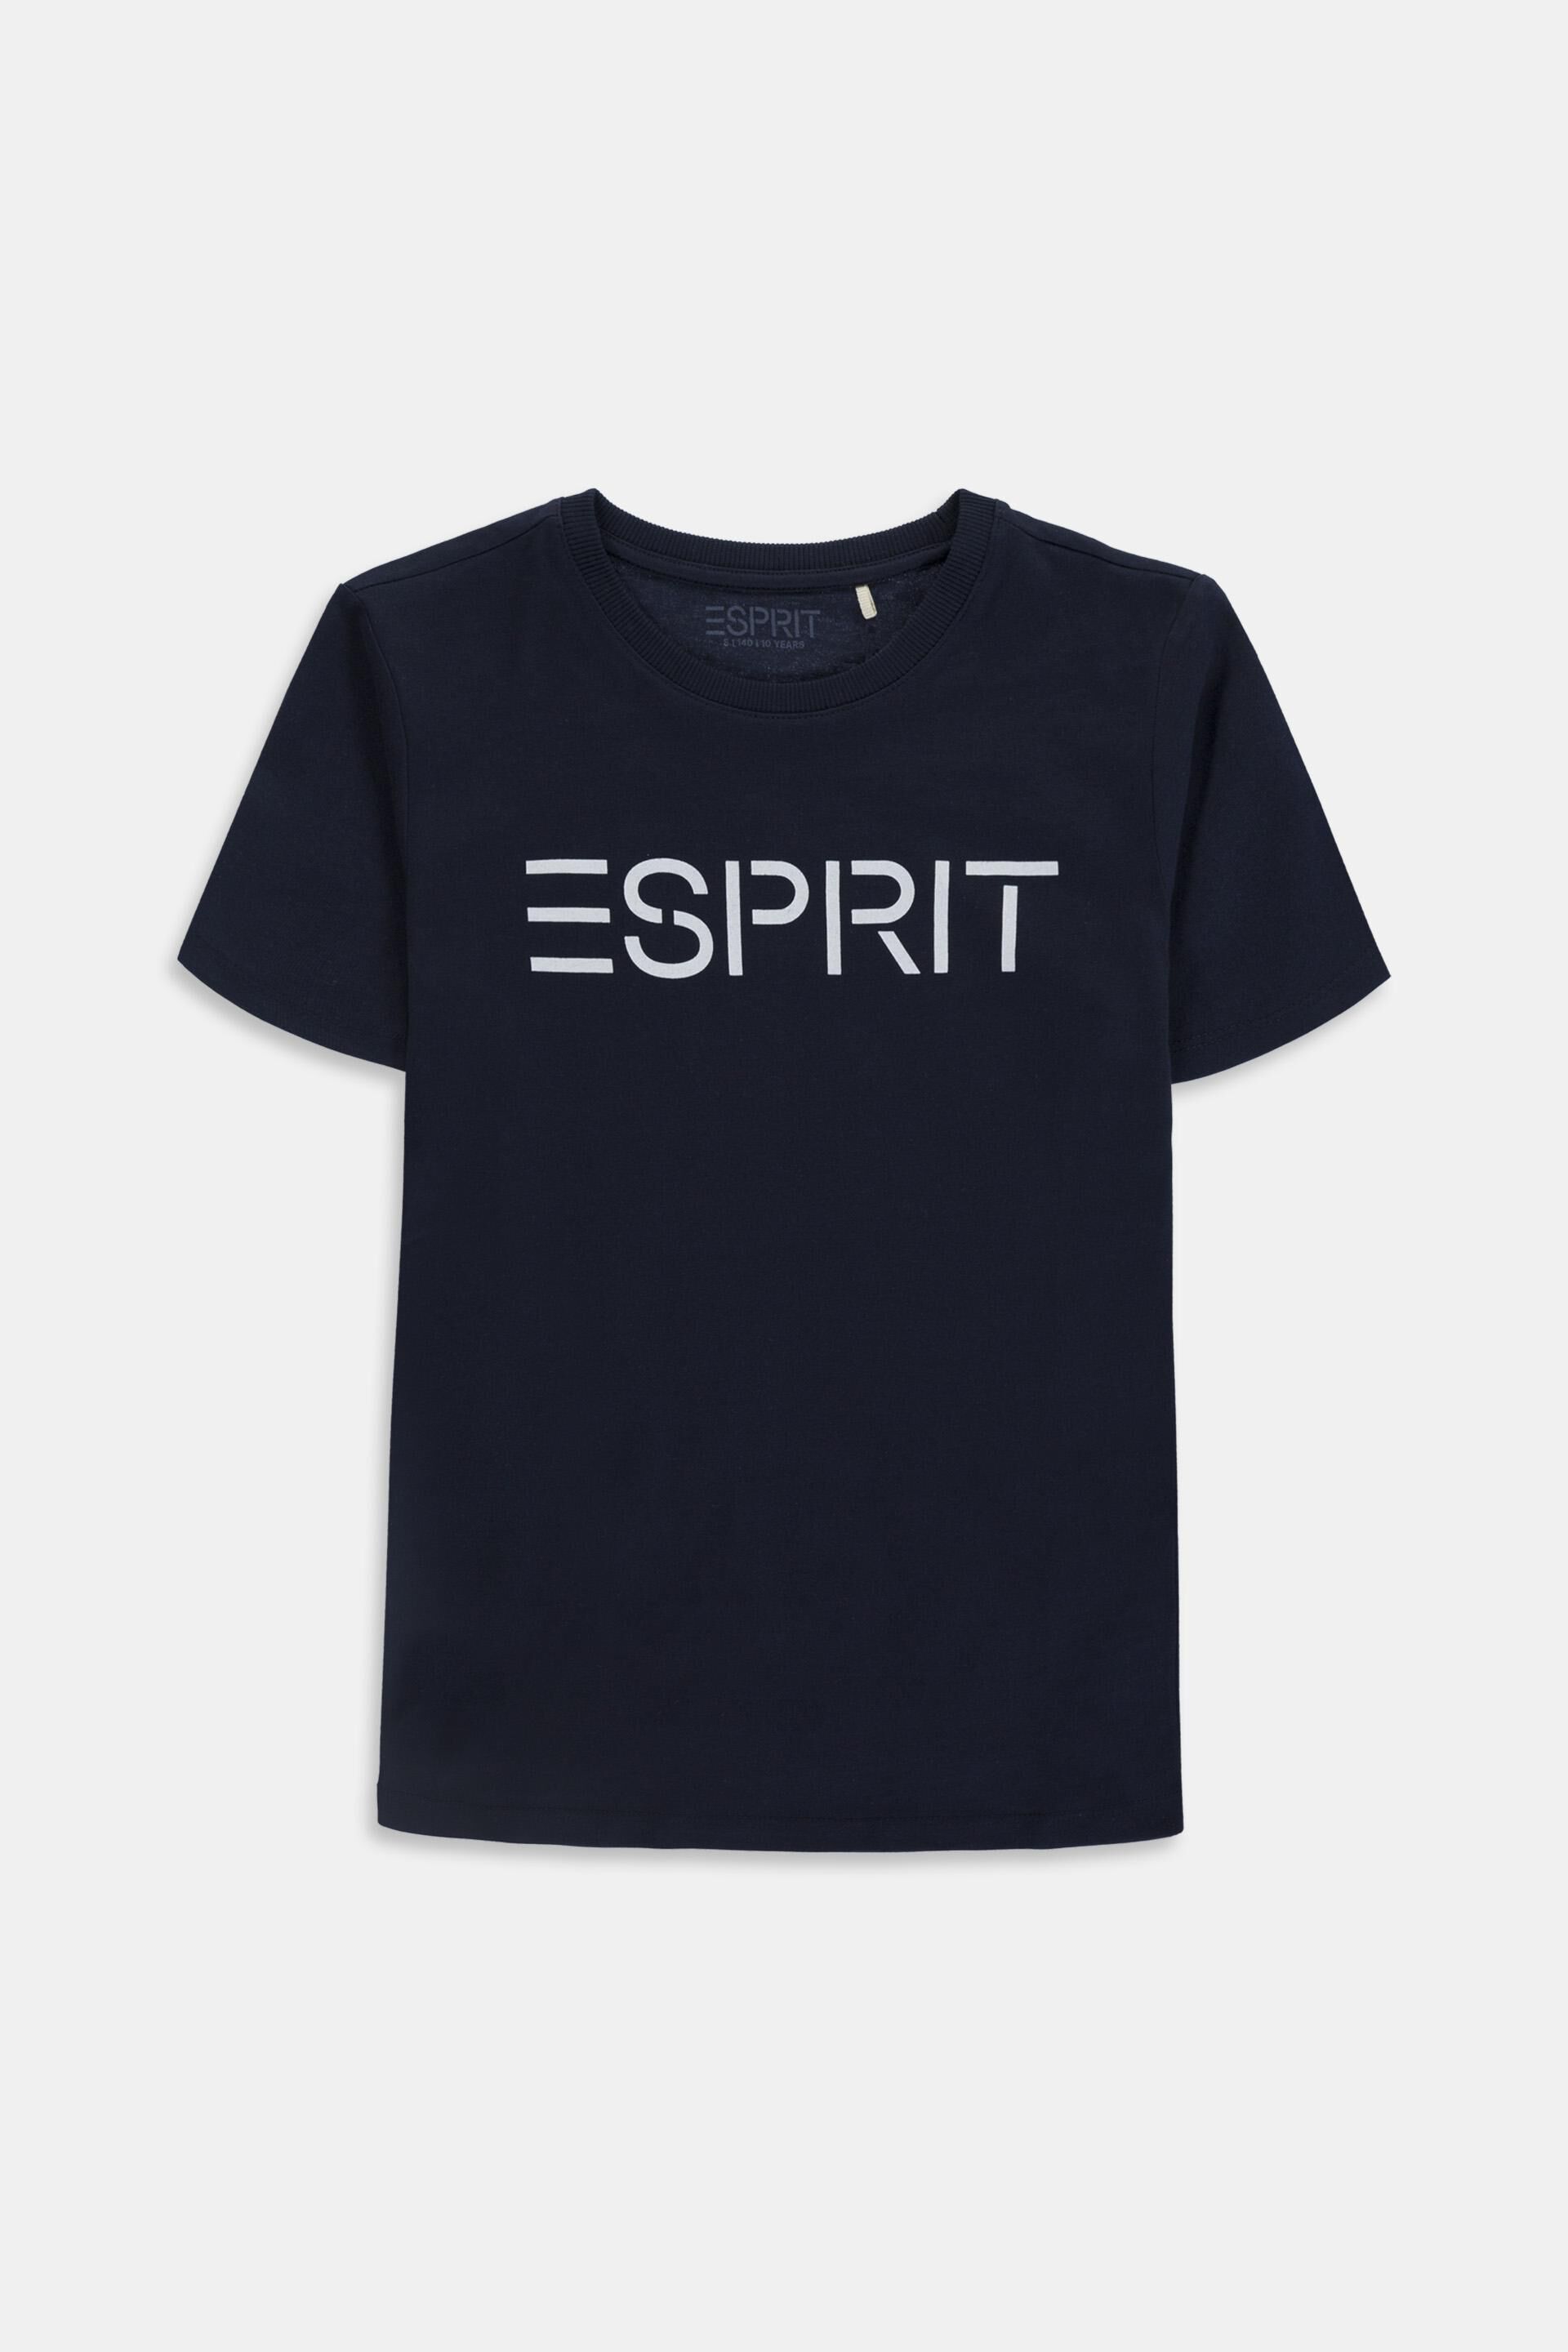 ESPRIT Logo T-shirt, cotton our online shop